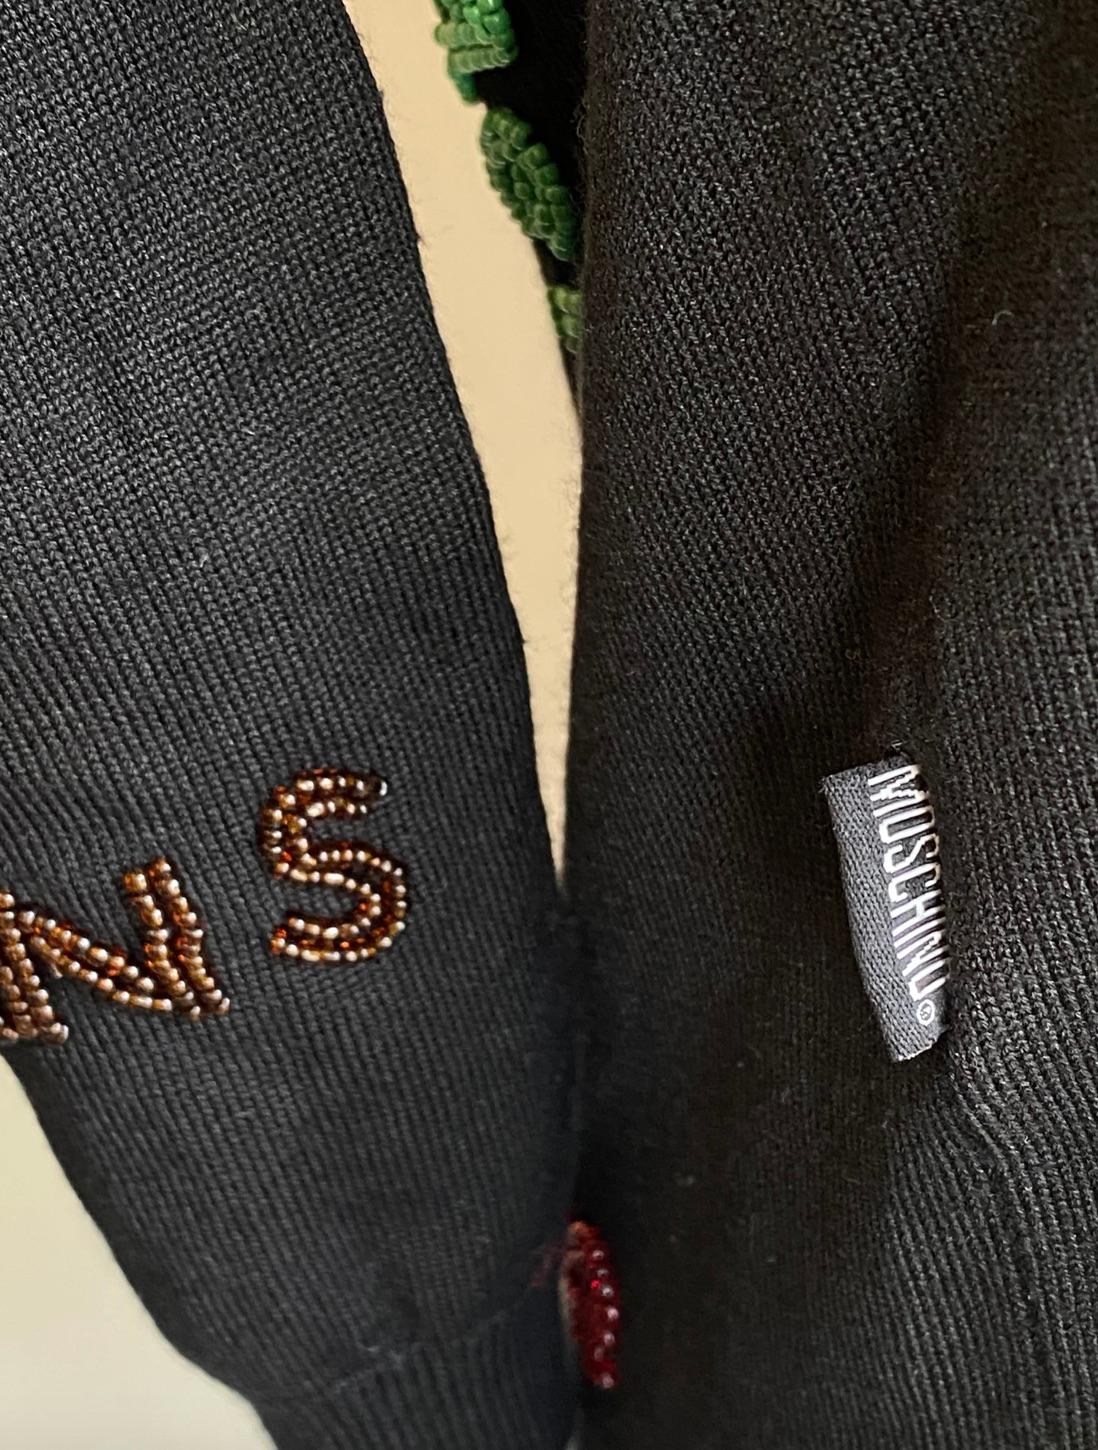 Perlenbesetztes Seidentop von Moschino Jeans. Schwarzes Oberteil aus einer Seidenmischung, verziert mit mehrfarbigen Perlen, auf denen 